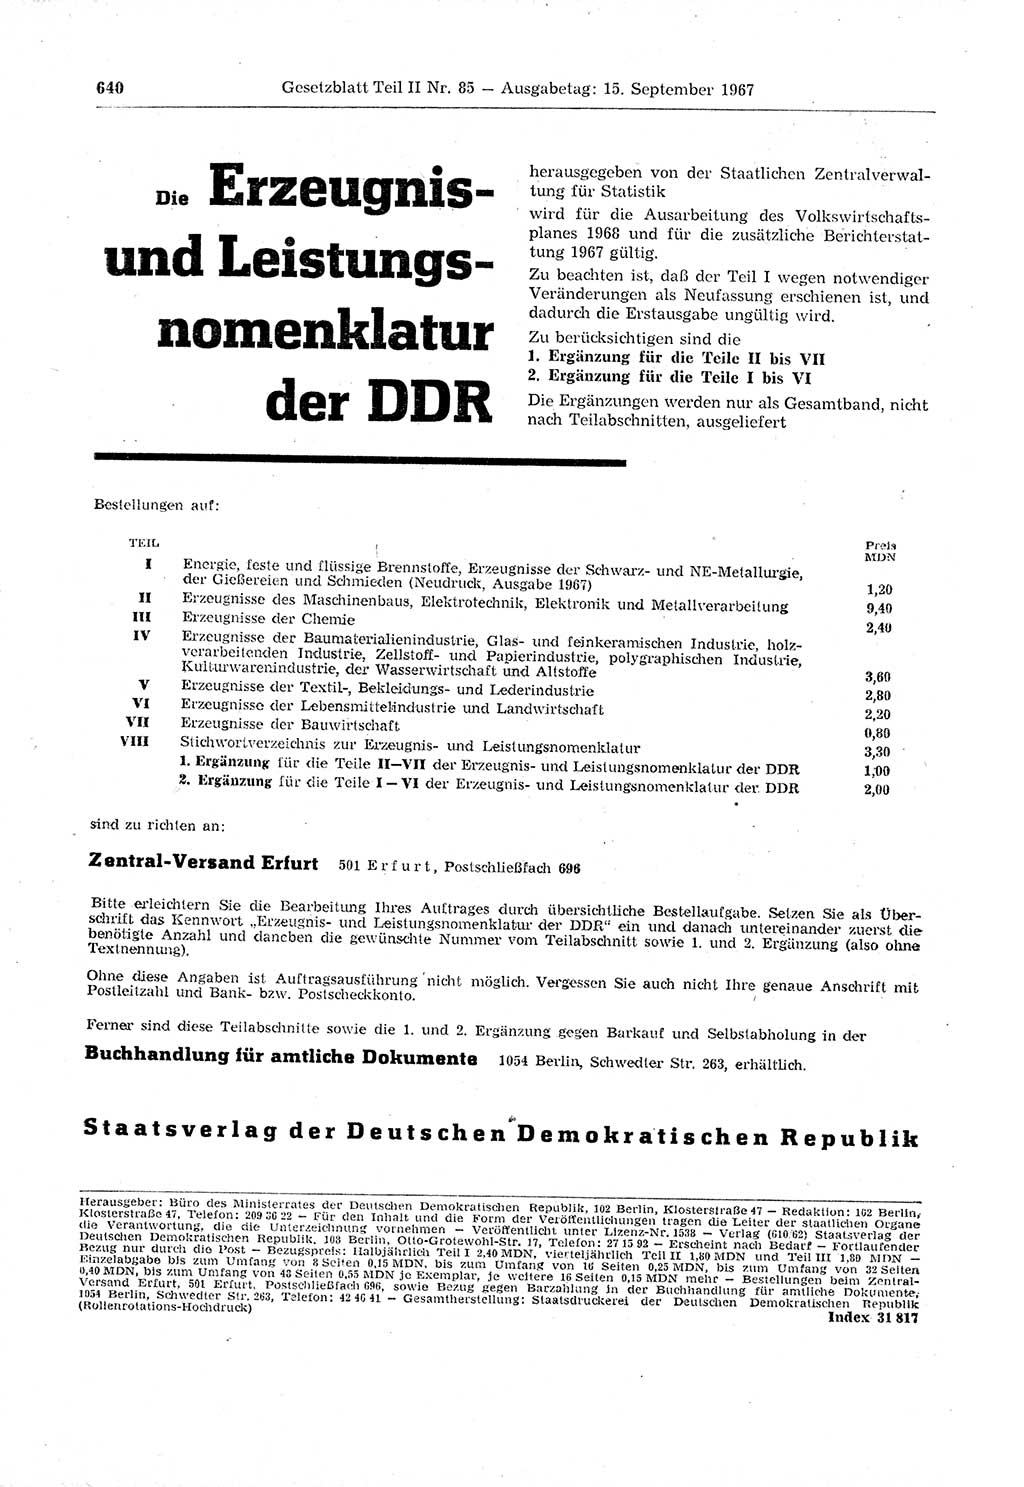 Gesetzblatt (GBl.) der Deutschen Demokratischen Republik (DDR) Teil ⅠⅠ 1967, Seite 640 (GBl. DDR ⅠⅠ 1967, S. 640)